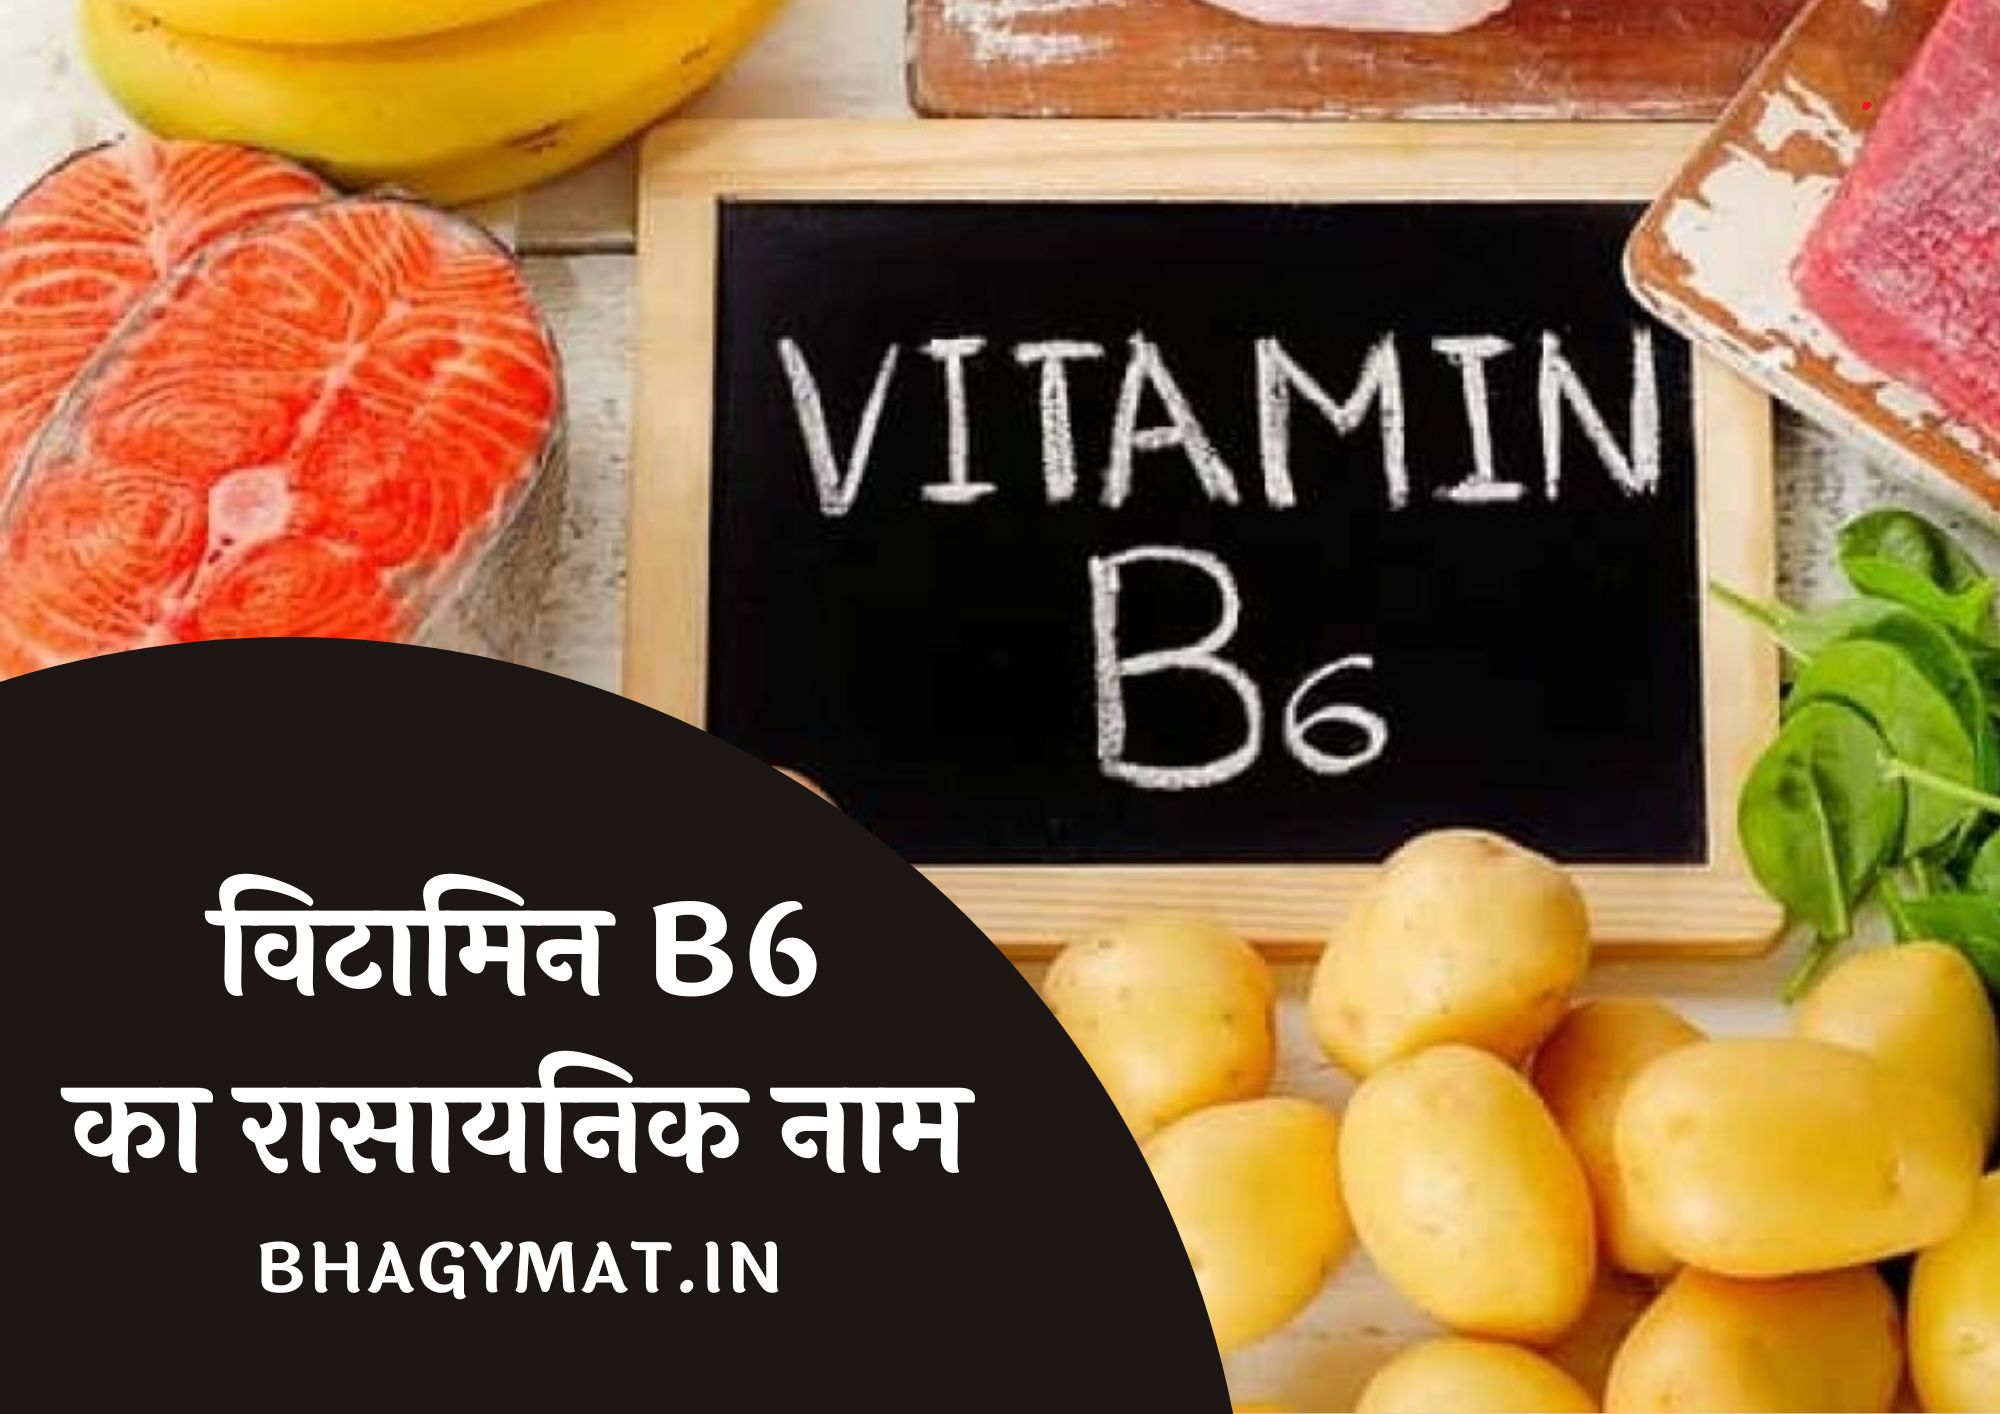 विटामिन B6 का रासायनिक नाम क्या है (Vitamin B6 Chemical Name In Hindi) - Vitamin B6 Ka Rasayanik Naam Kya Hai